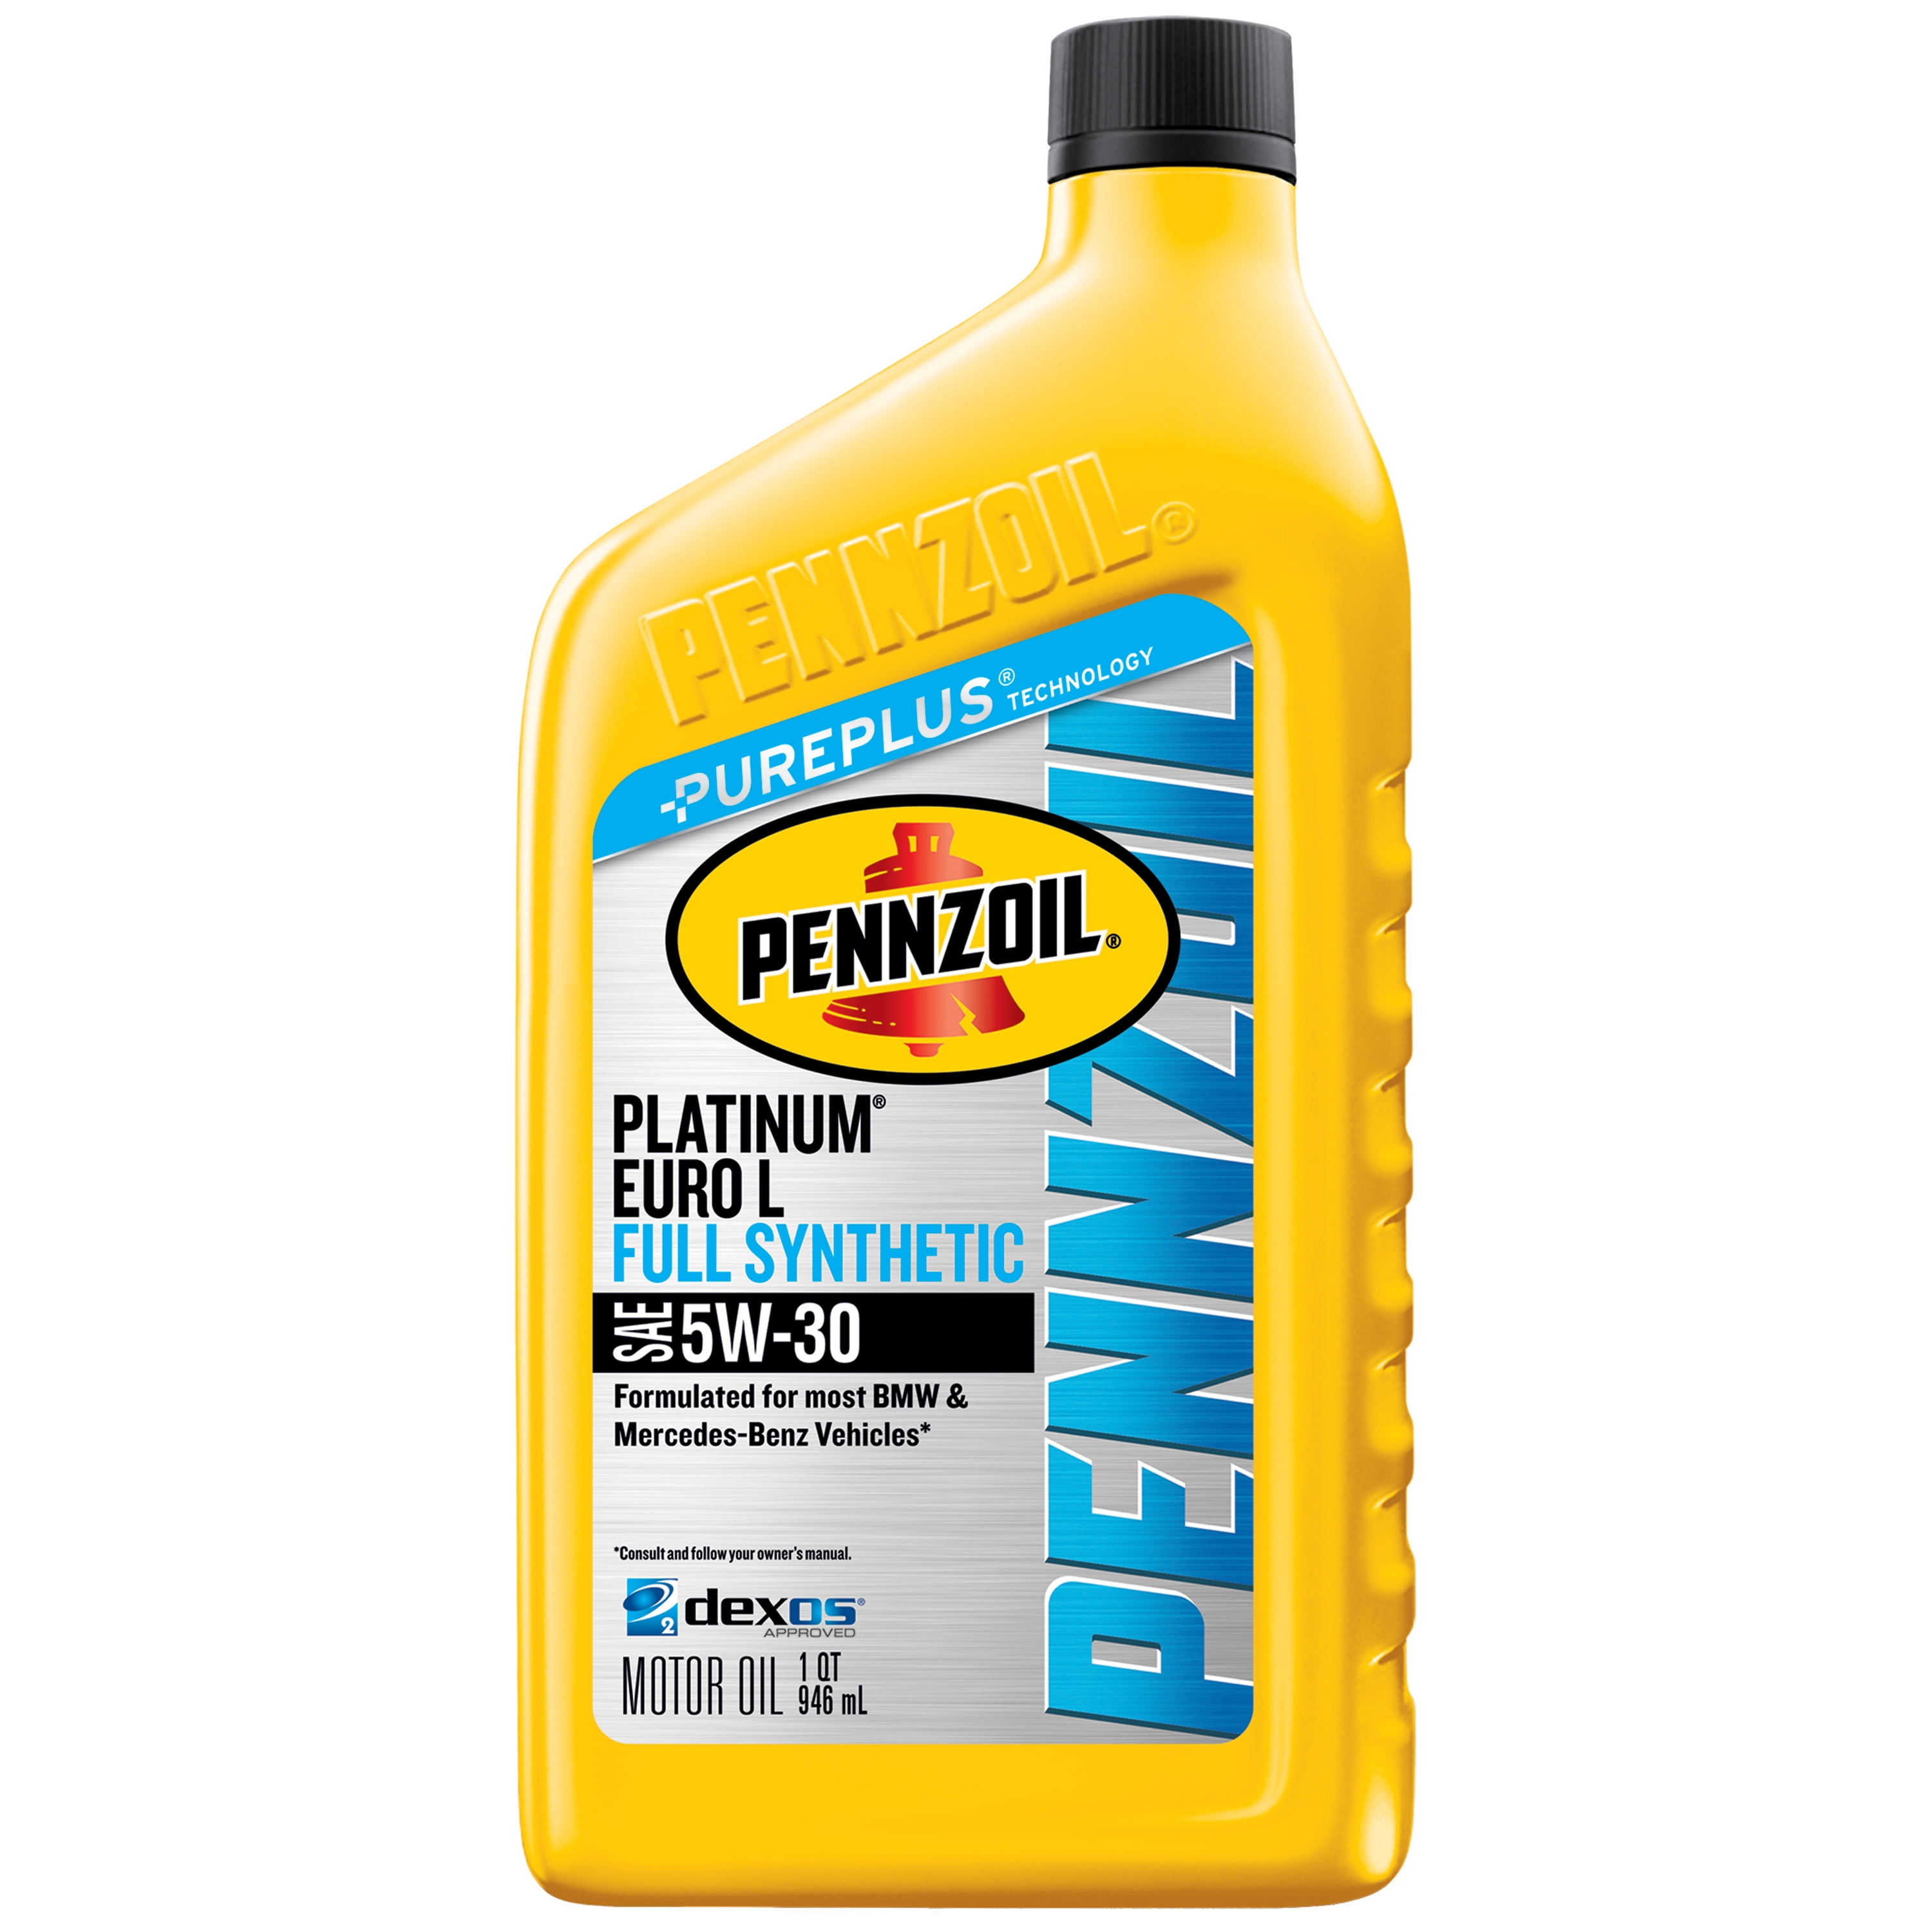 pennzoil-platinum-full-synthetic-5w-20-motor-oil-5-quart-lupon-gov-ph